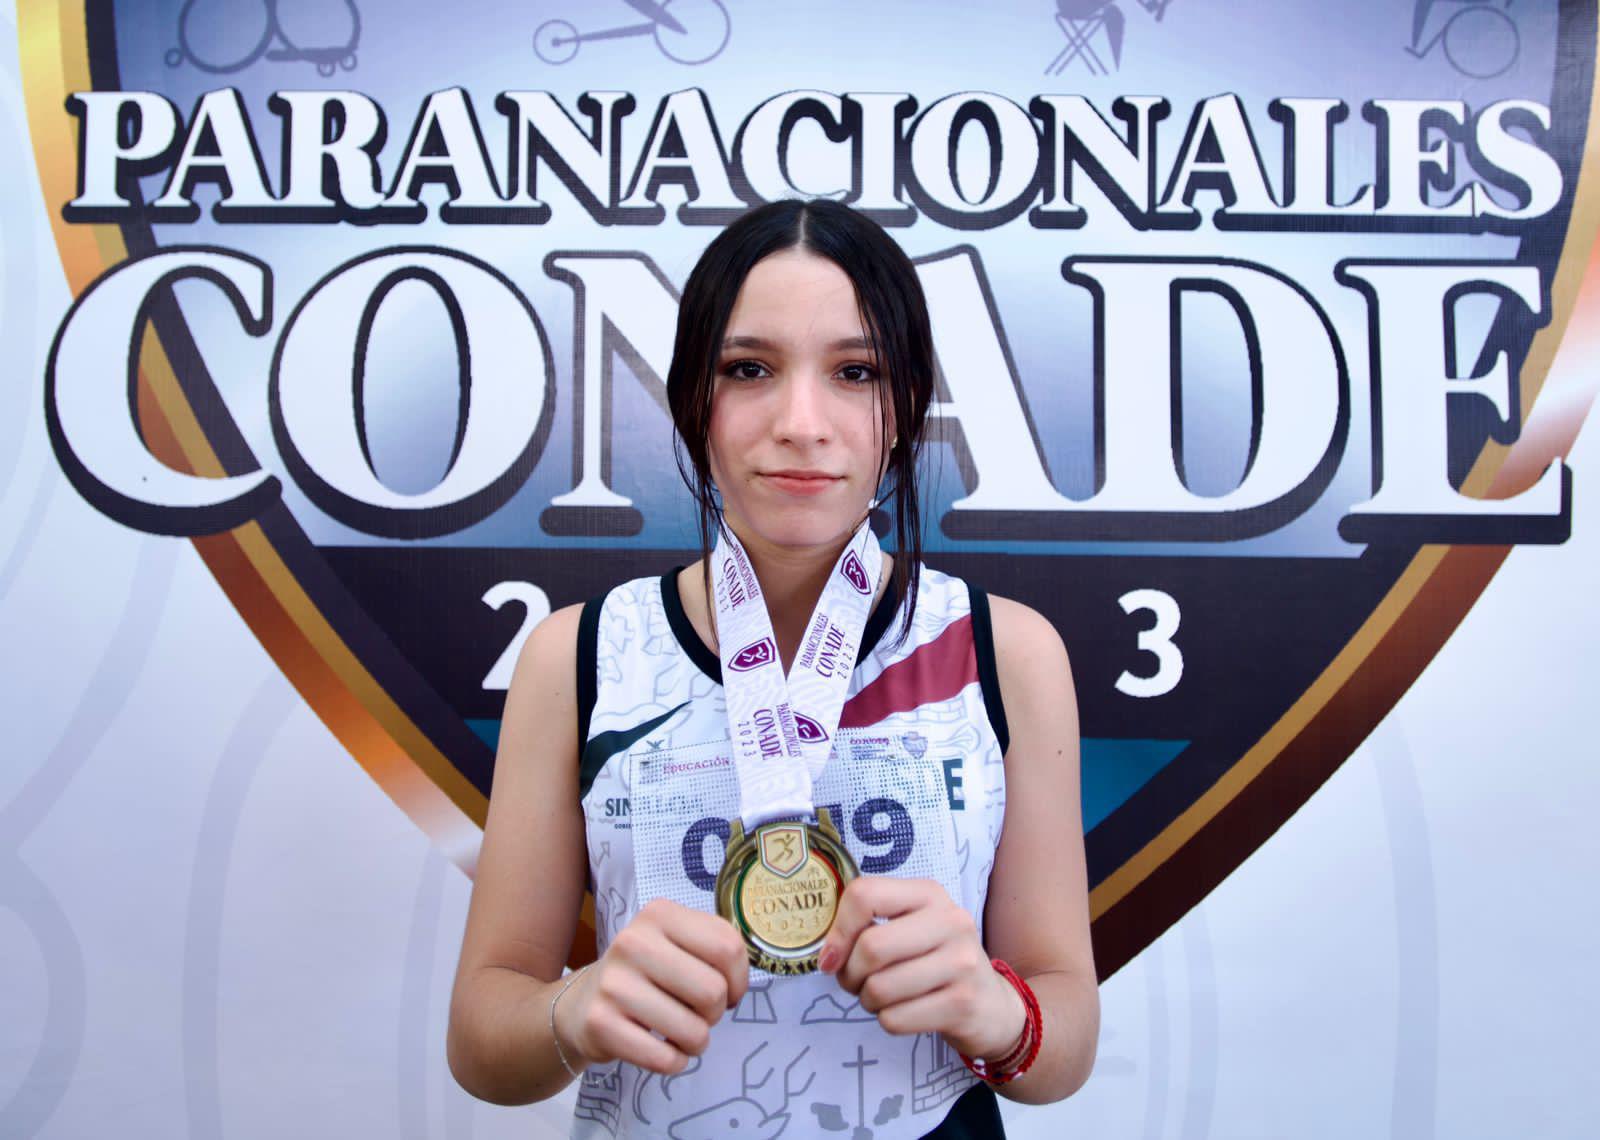 $!Logra Sinaloa 19 medallas de oro en el primer día de los Paranacionales